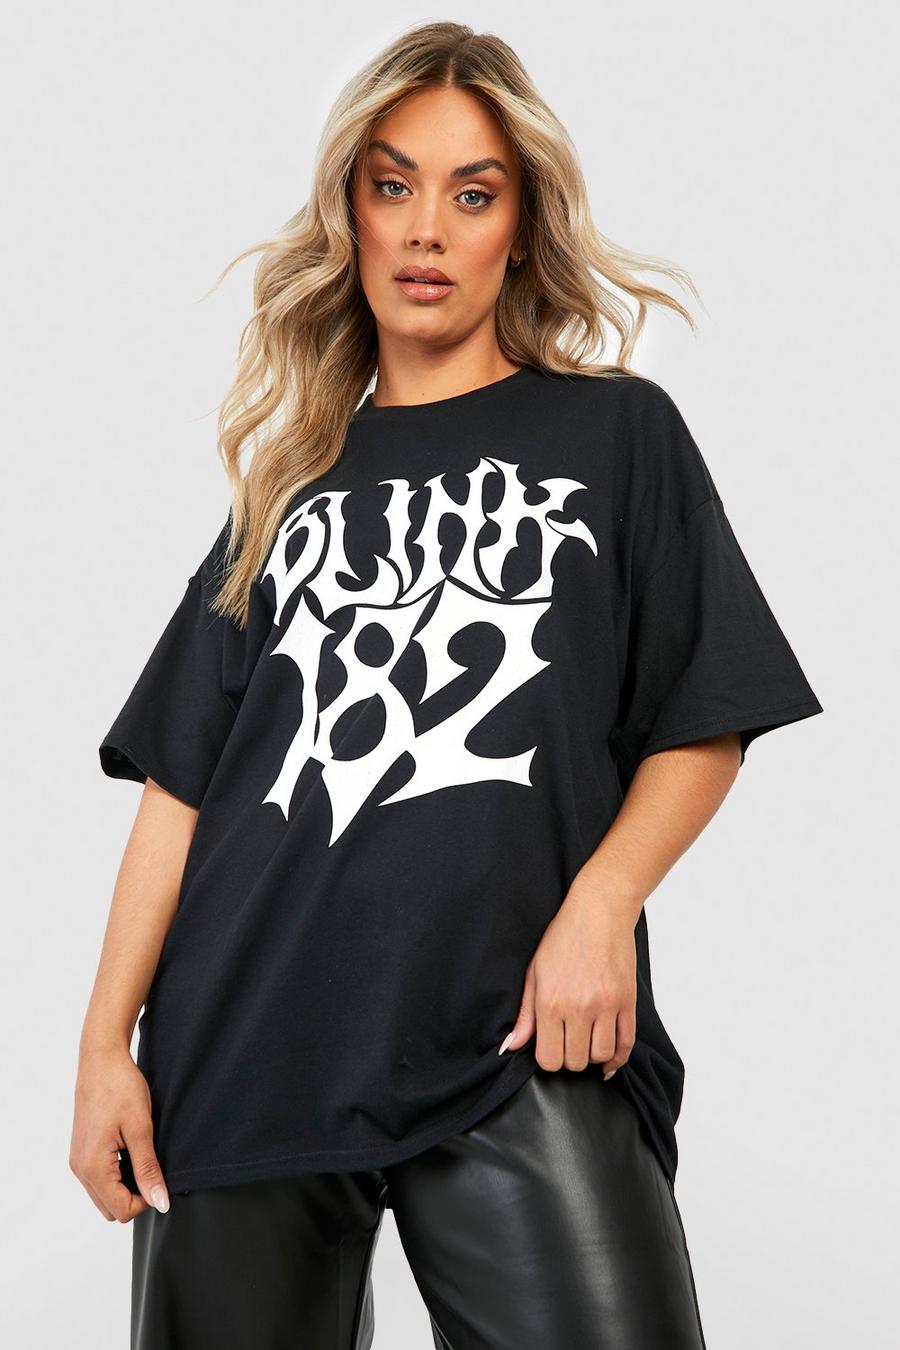 Black Plus Oversized Blink 182 License T-Shirt